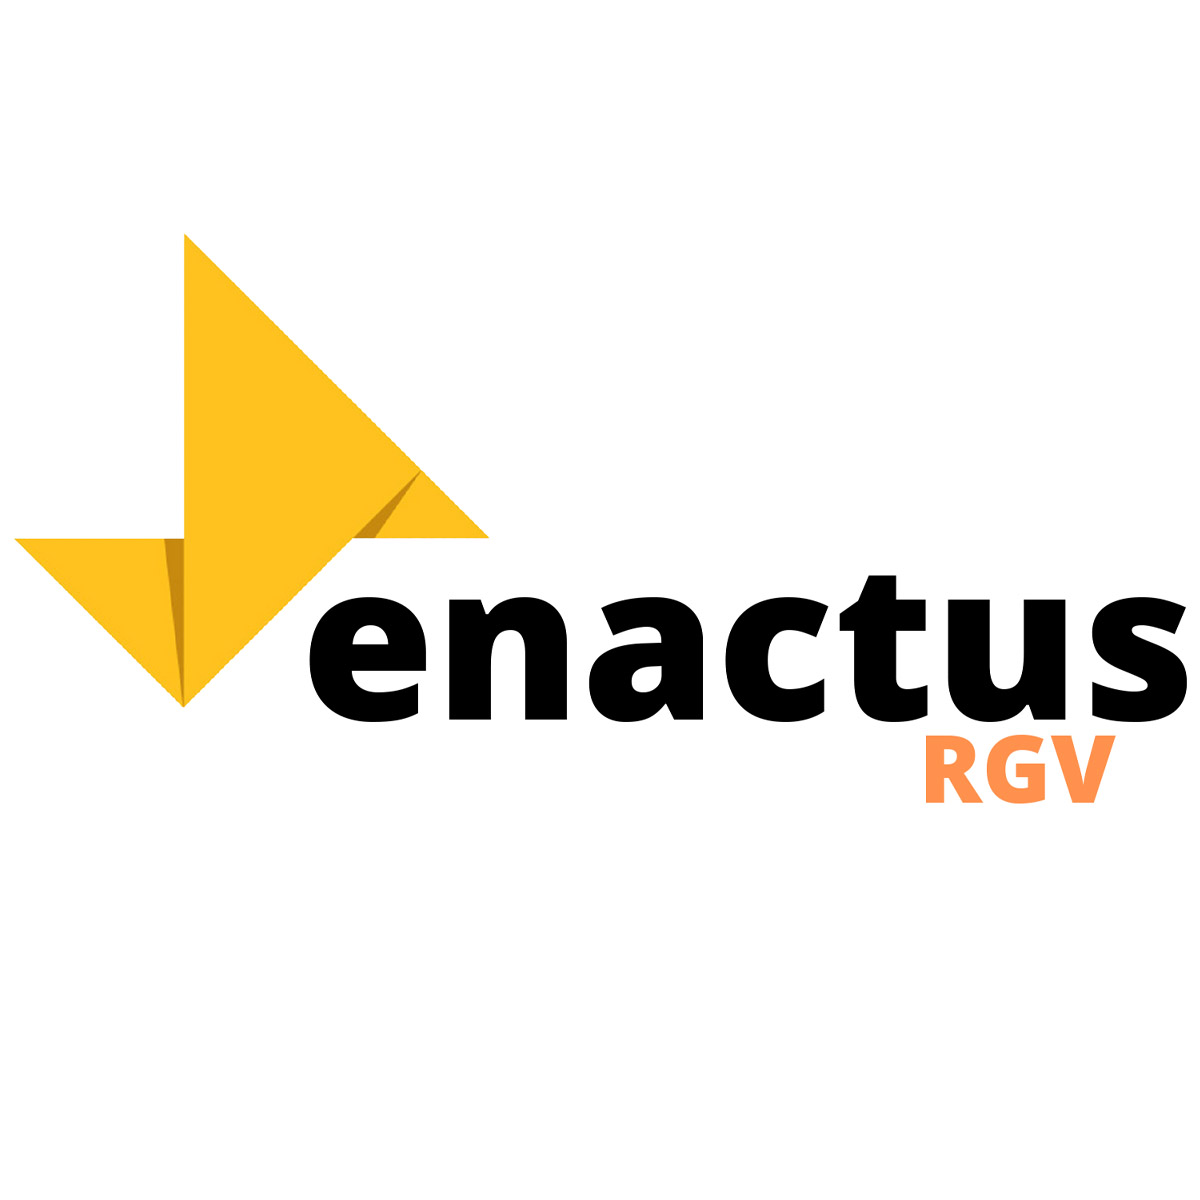 Enactus RGV